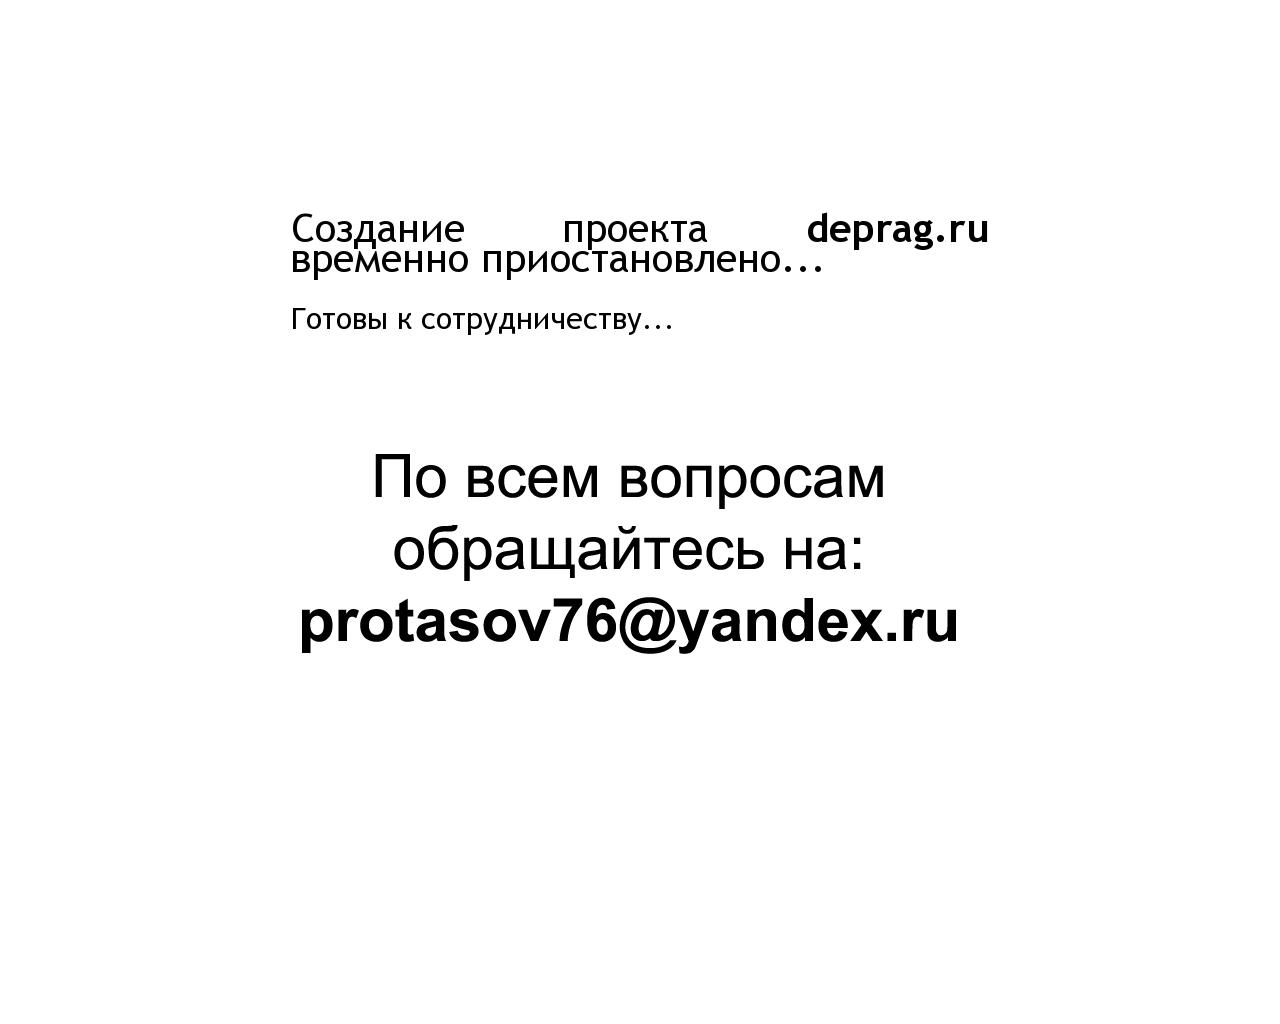 Изображение сайта deprag.ru в разрешении 1280x1024